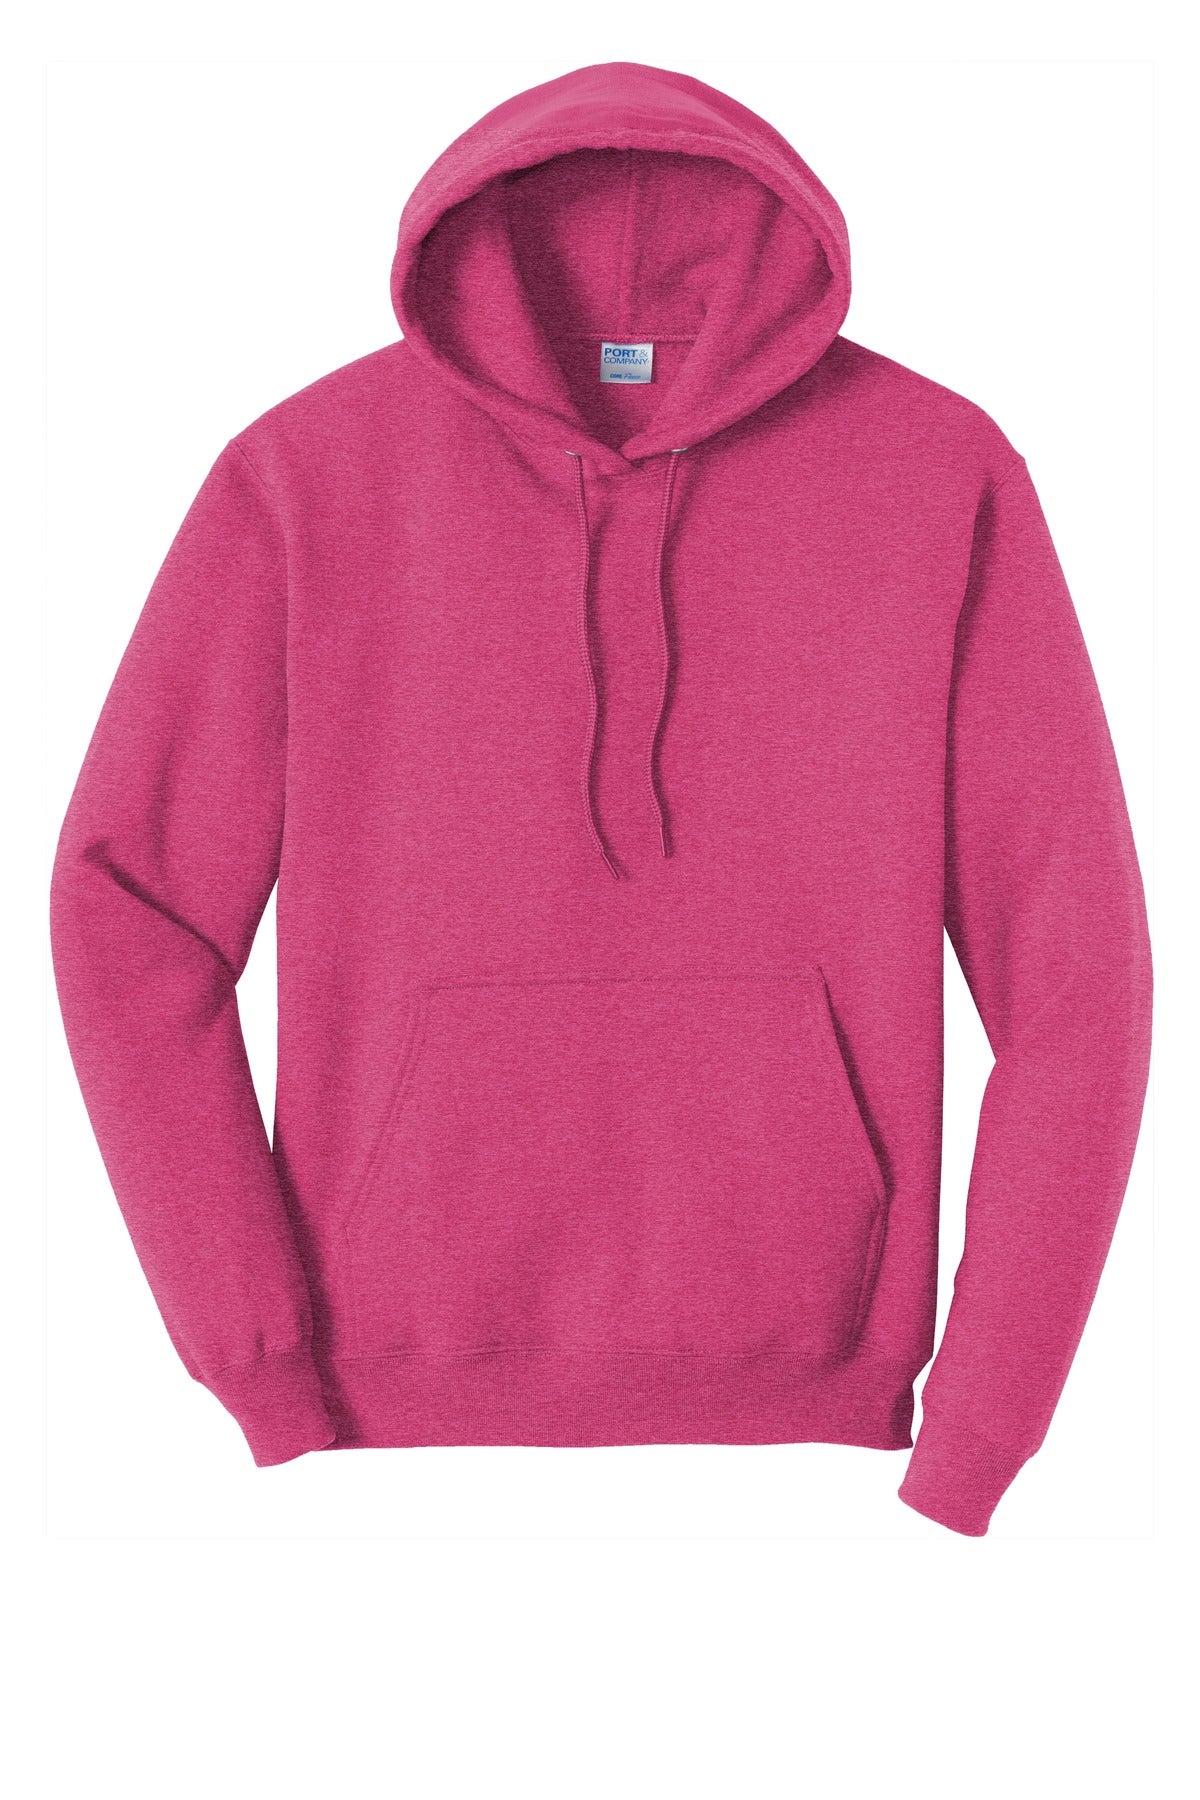 Port & Company Core Fleece Hooded Sweatshirt